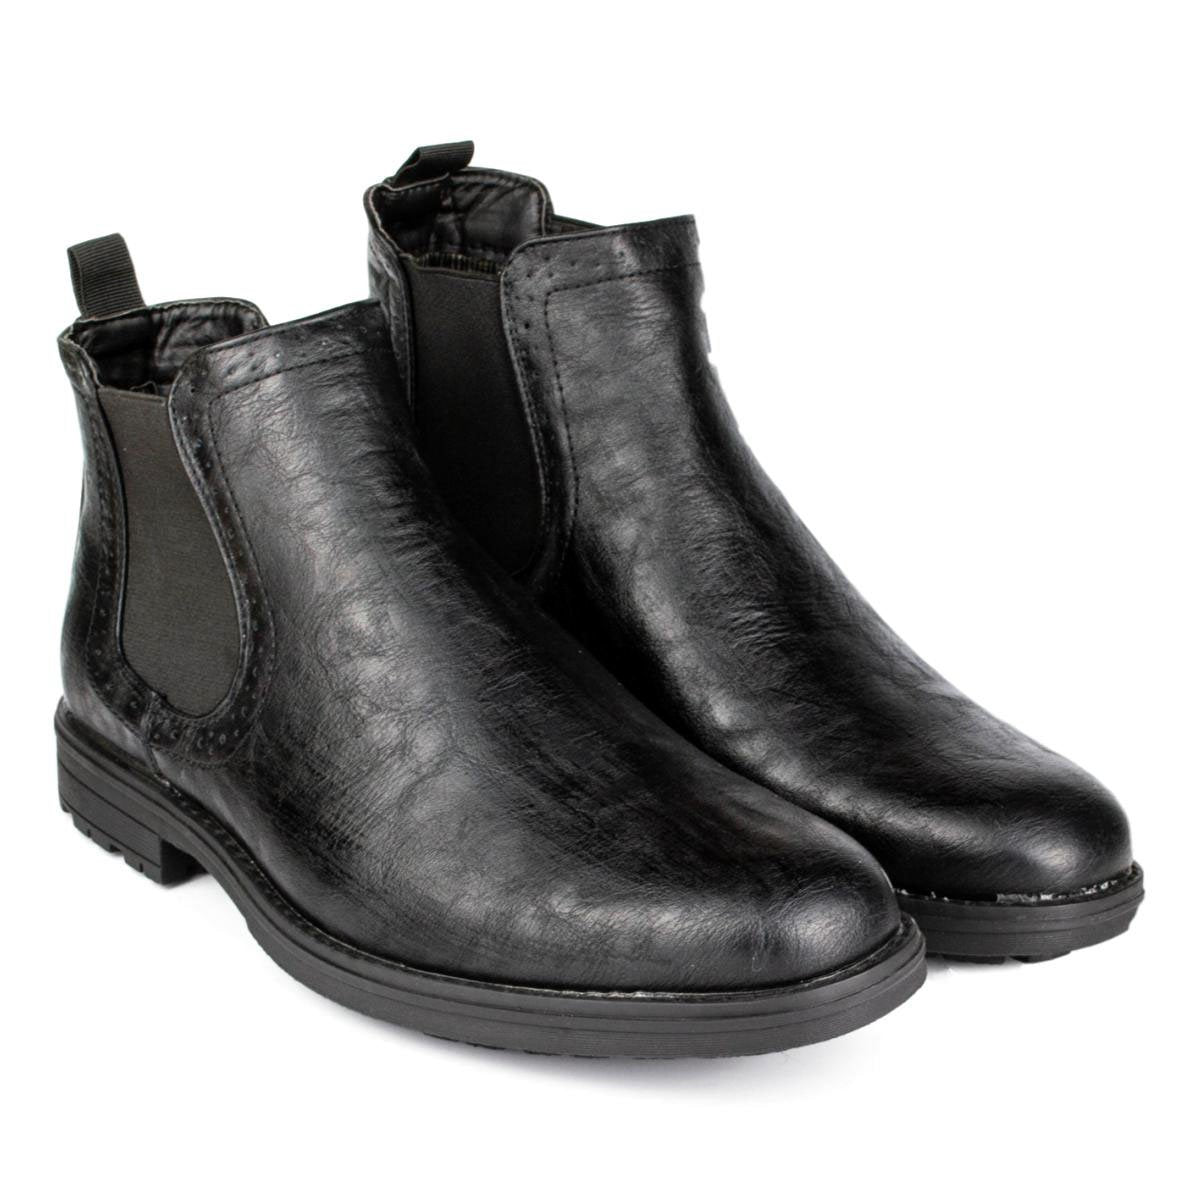 Men's Chelsea Boot in Black - Watney Shoes 